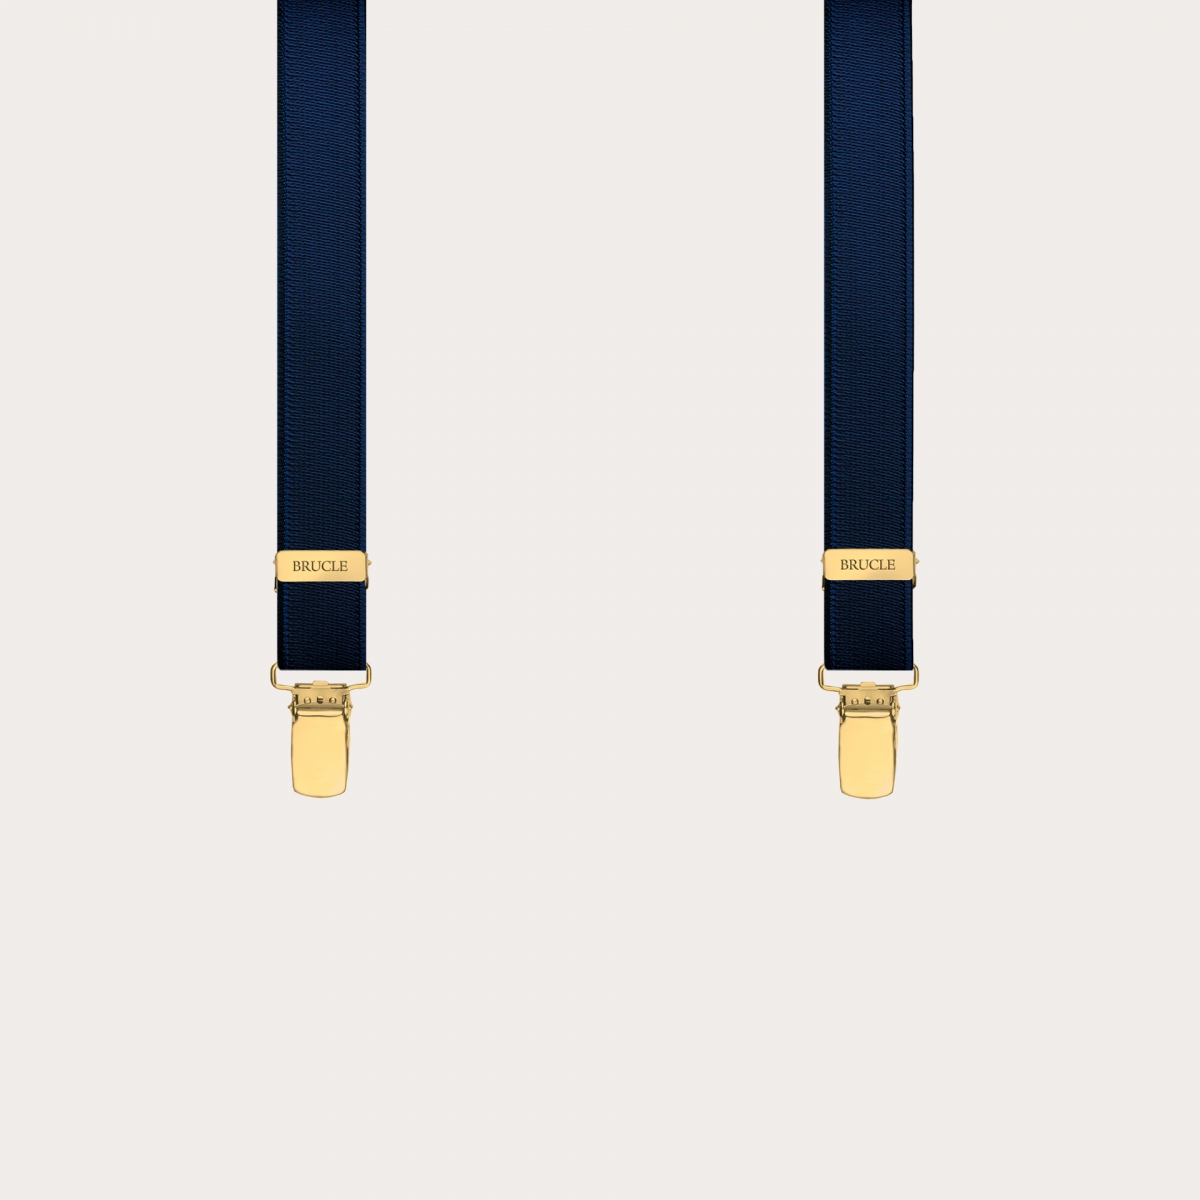 Bretelles fines Y élastiques à clips dorés, bleu satin